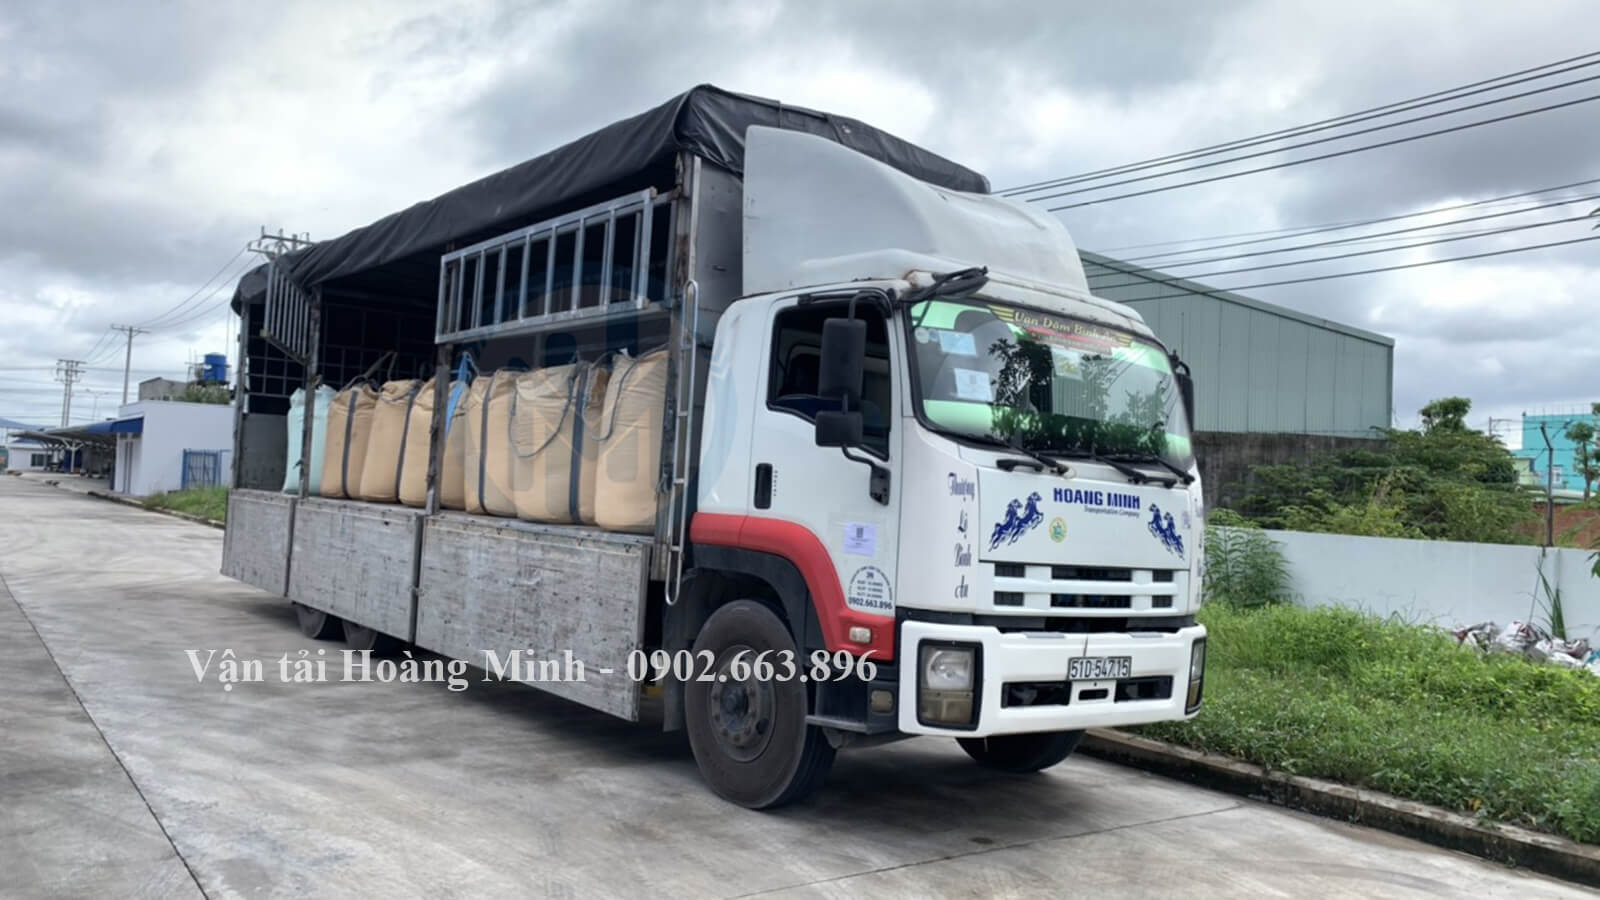 Hình ảnh xe tải chở hàng thức ăn chăn nuôi cho khách tại Cà Mau đi Bến Tre.jpg